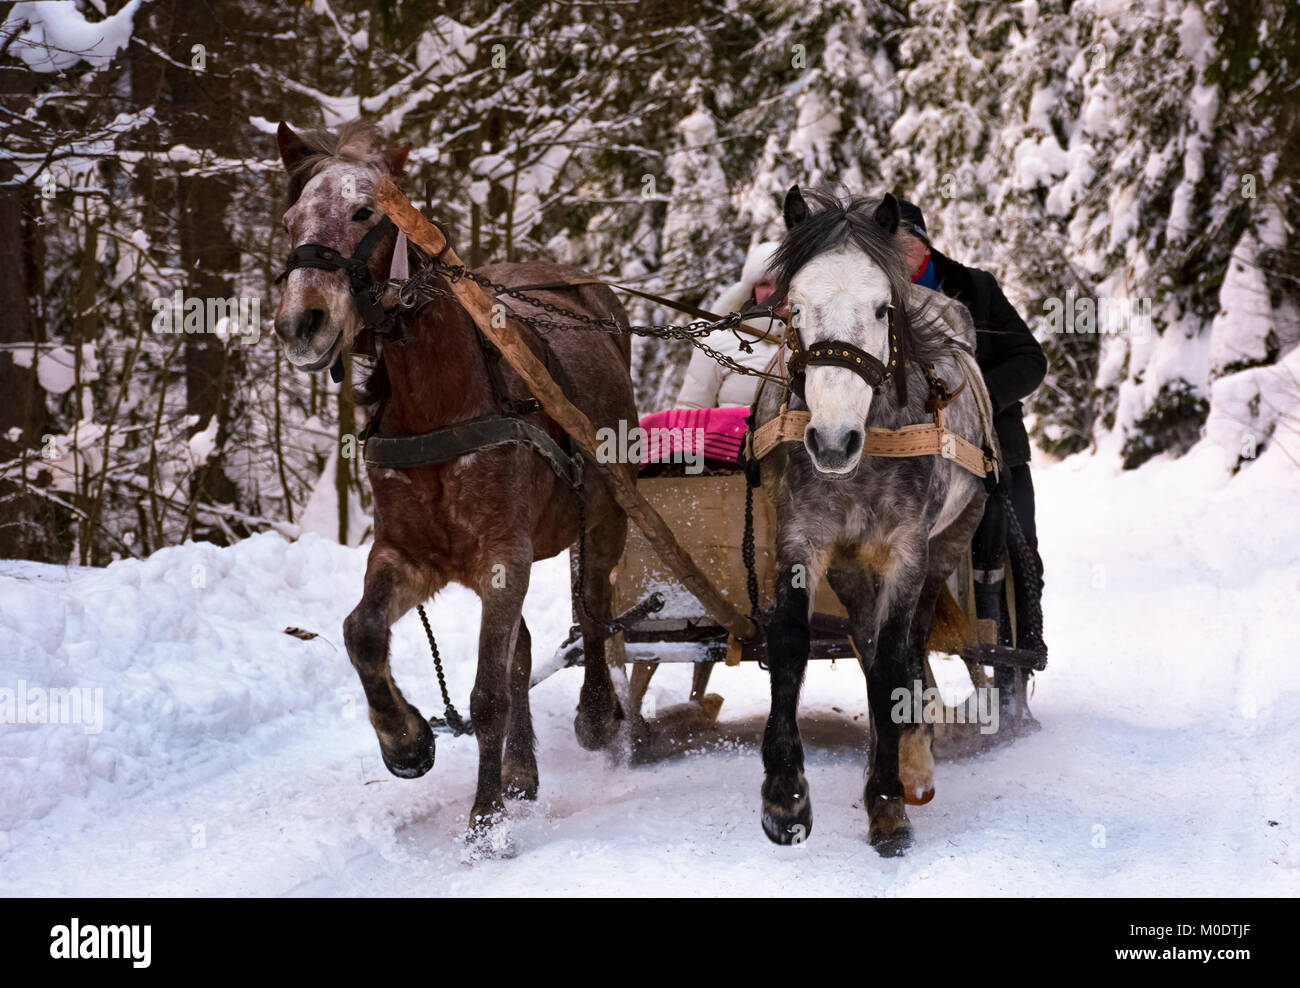 A cavallo di due ardesia a cavallo nei boschi innevati. passatempo divertente e di momenti felici della stagione invernale Foto Stock